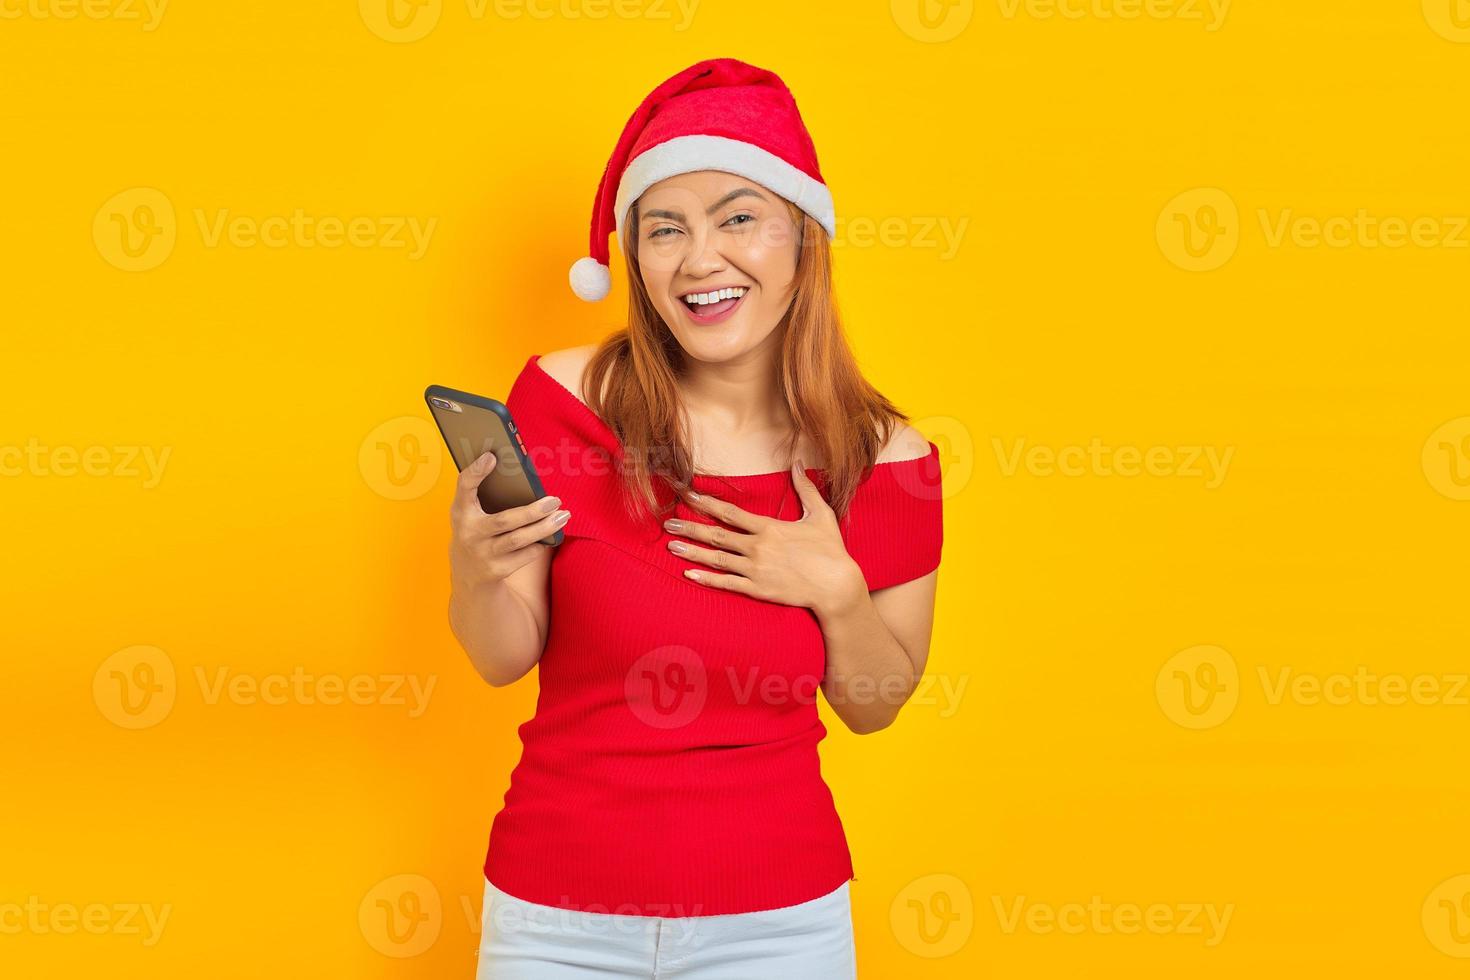 animada jovem asiática com chapéu de Papai Noel segurando um telefone celular com as mãos no peito sobre fundo amarelo foto